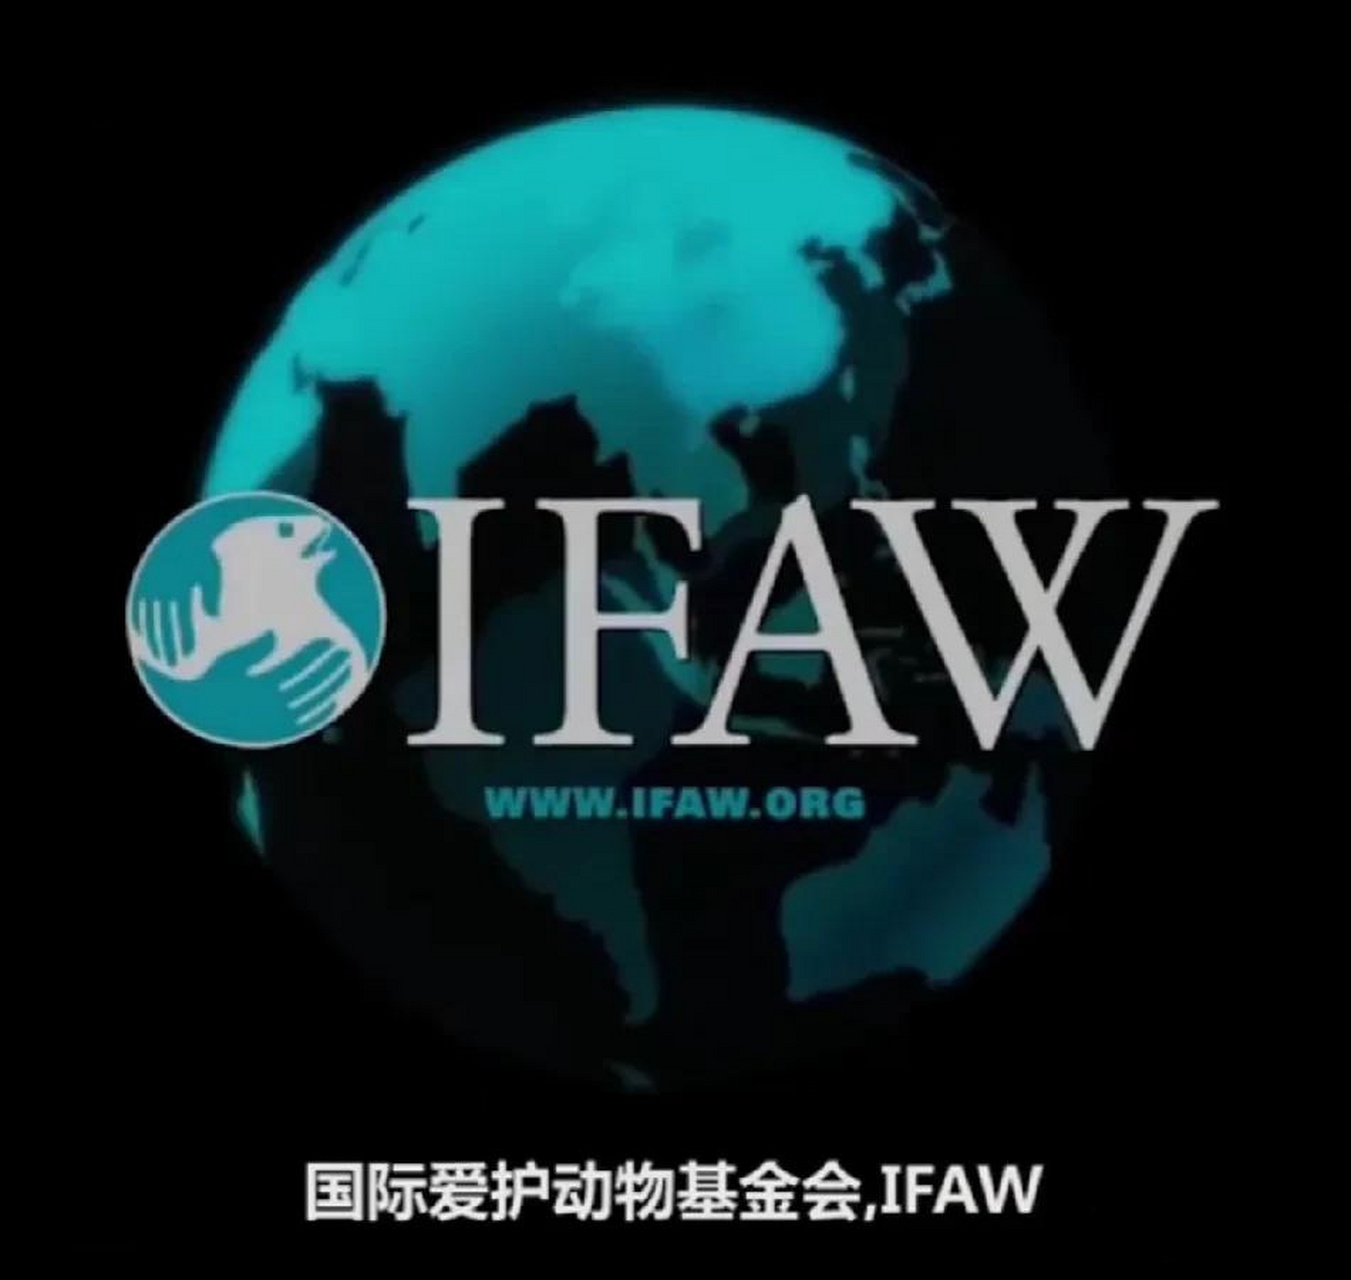 国际爱护动物基金会(ifaw)创立于1969年